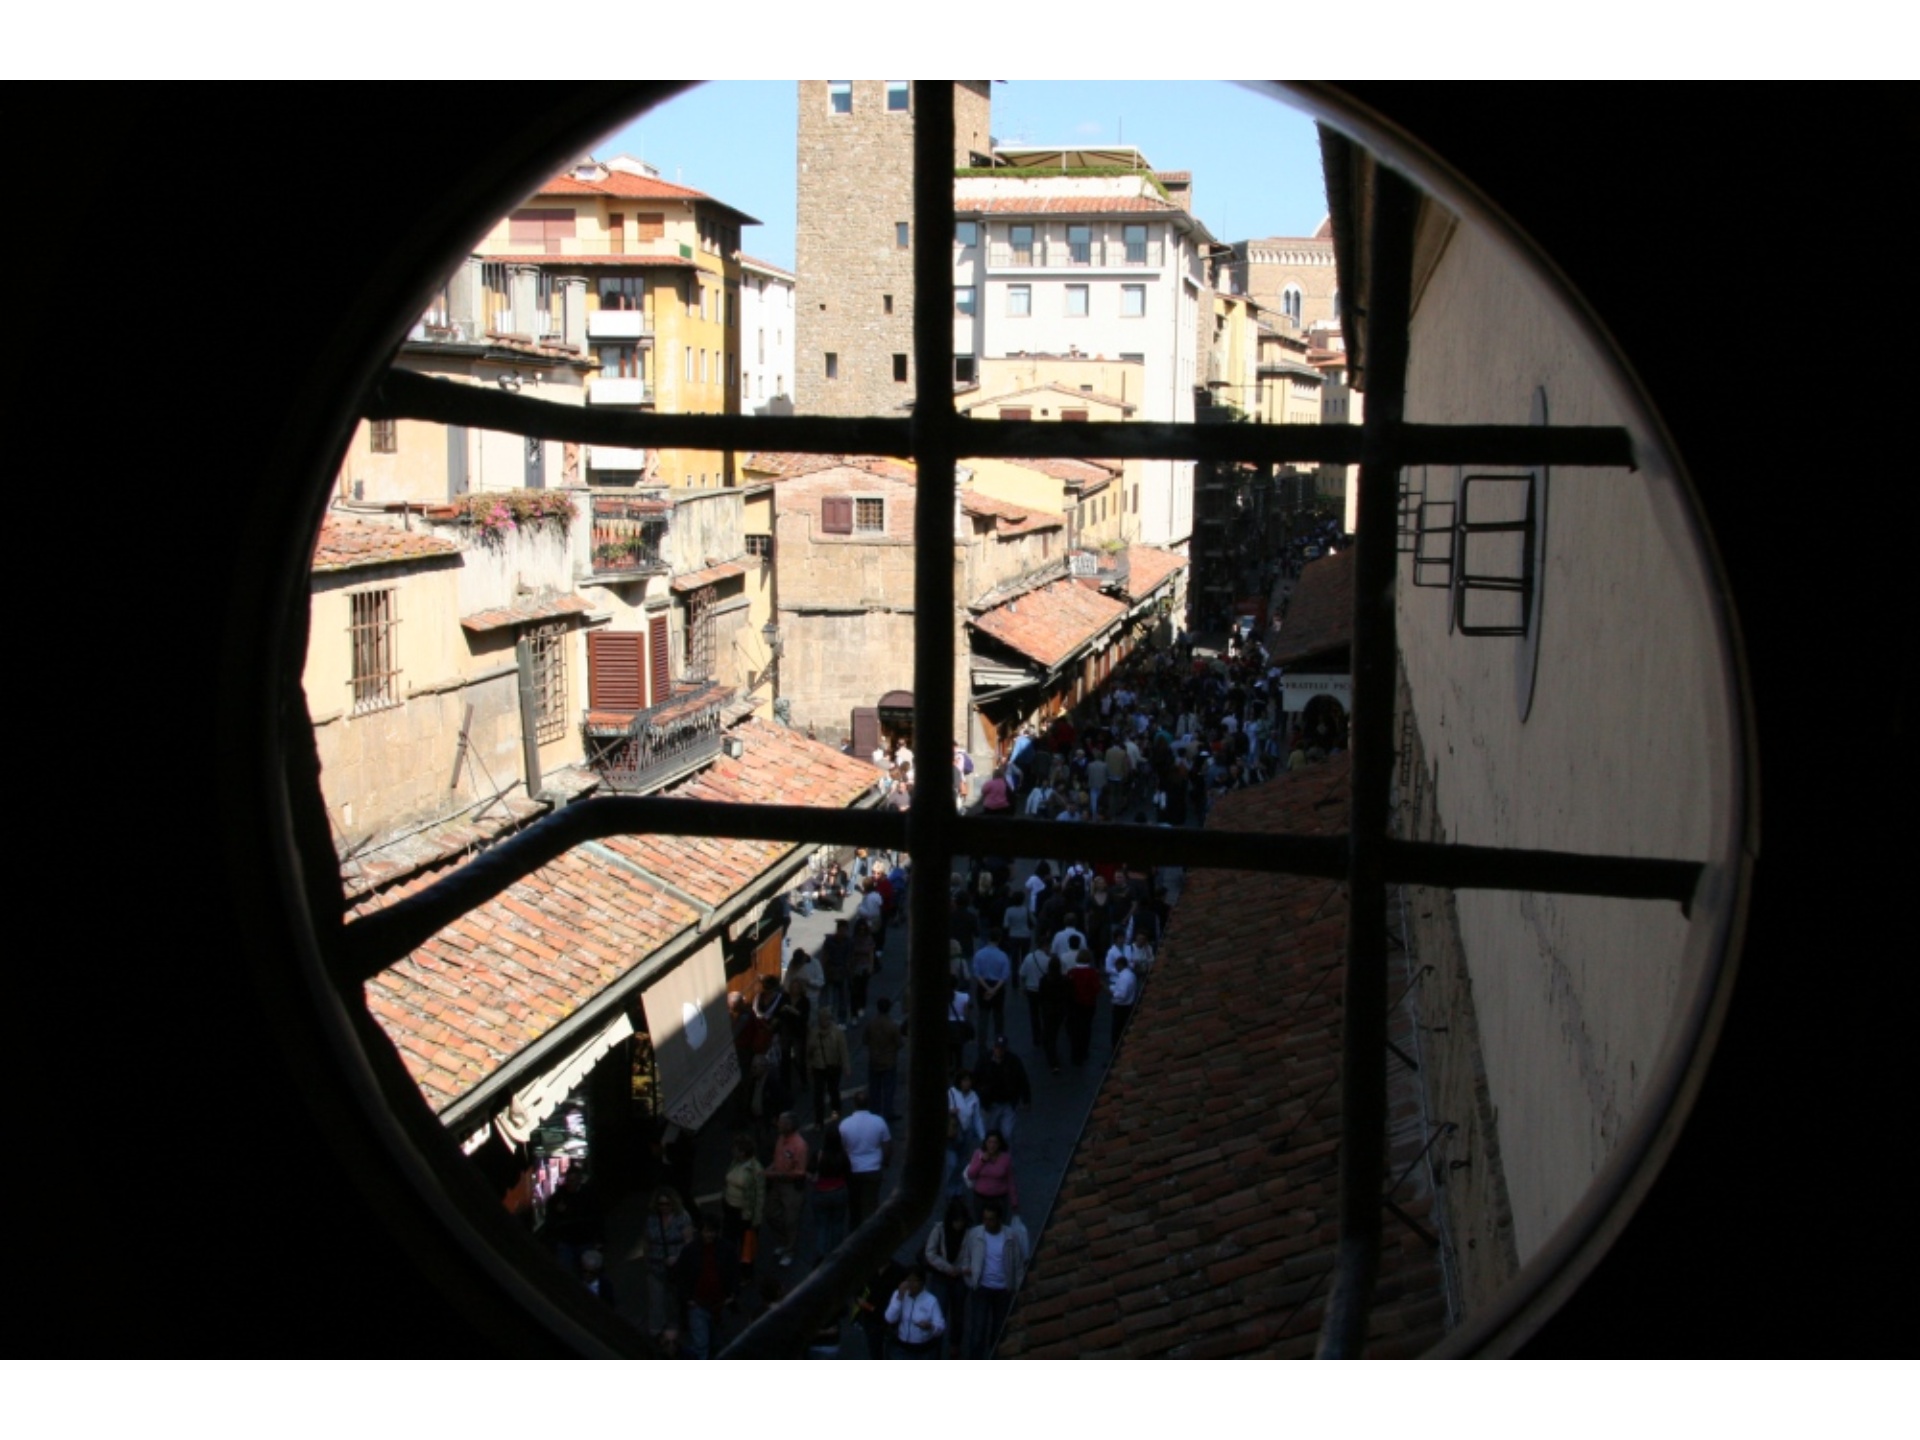 Blcik vom Vasarianischen Korridor auf Florenz